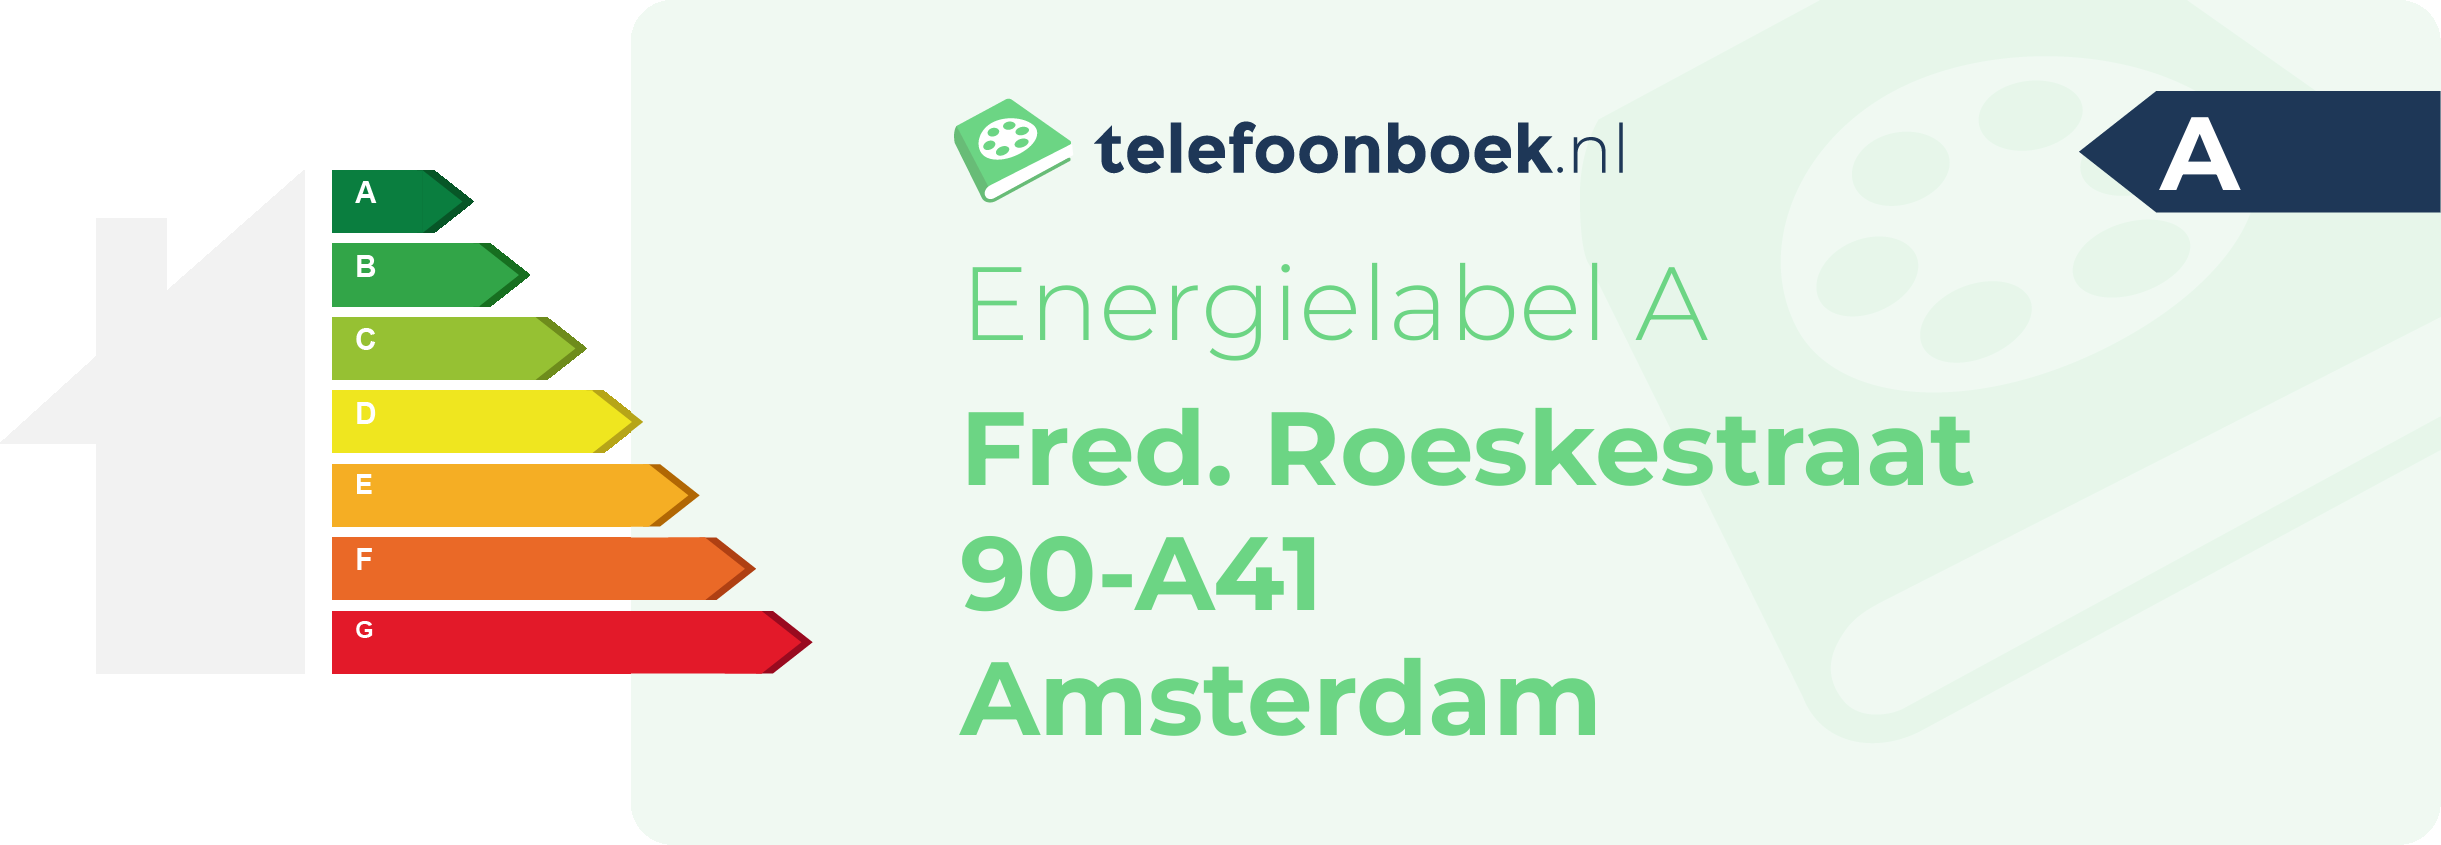 Energielabel Fred. Roeskestraat 90-A41 Amsterdam